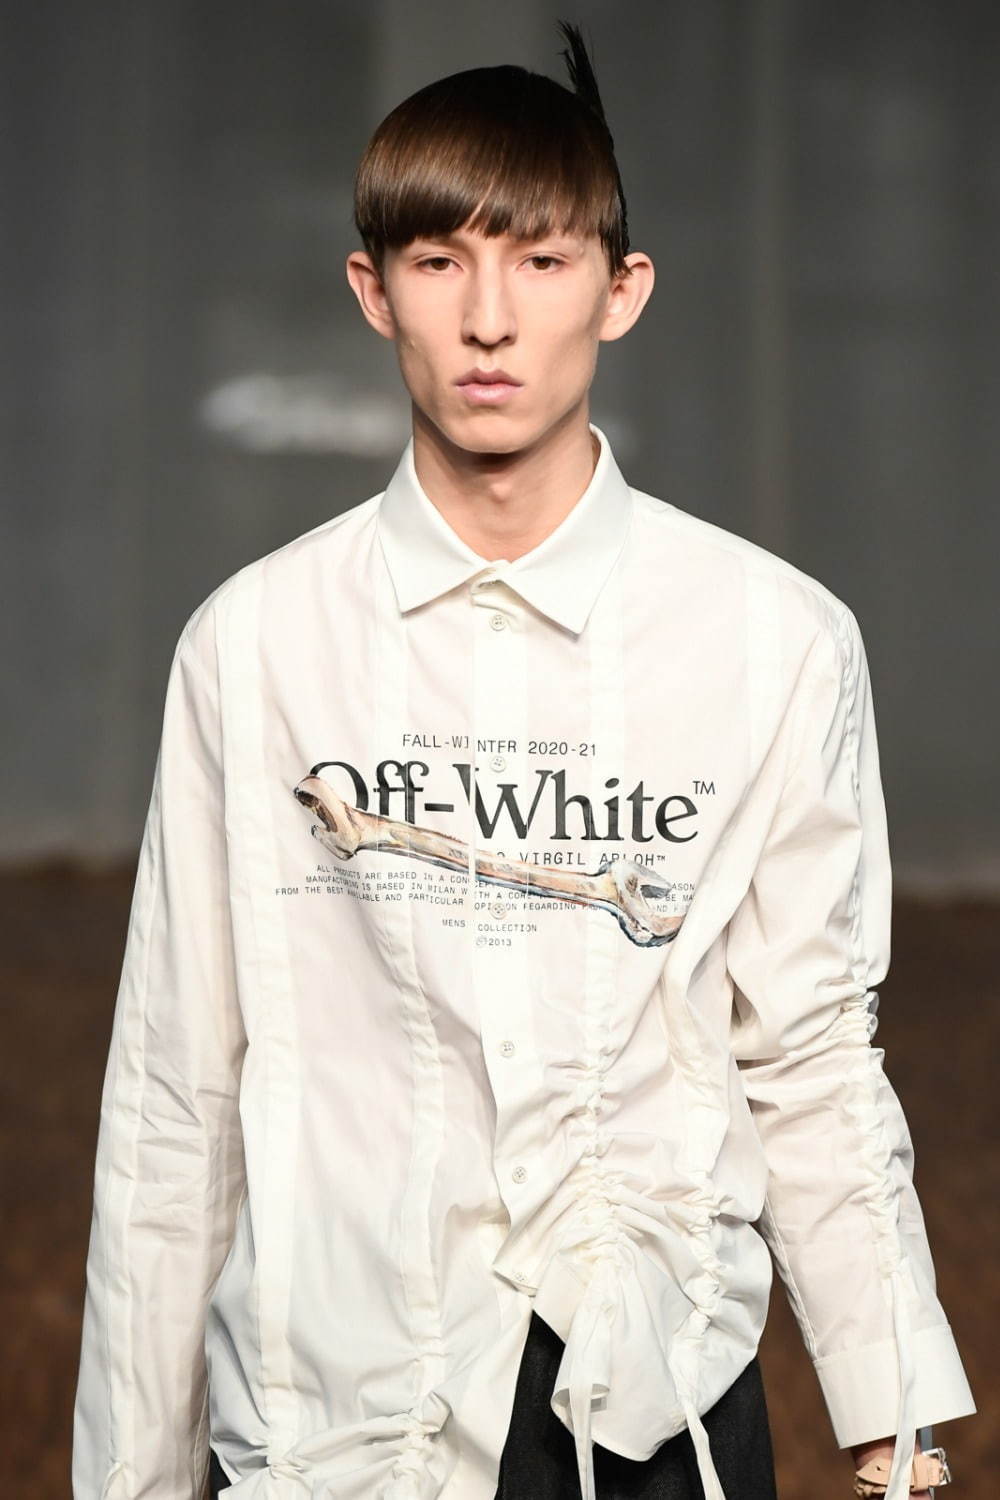 オフ-ホワイト (OFF-WHITE) 2020-21年秋冬メンズコレクション ディテール - 写真8